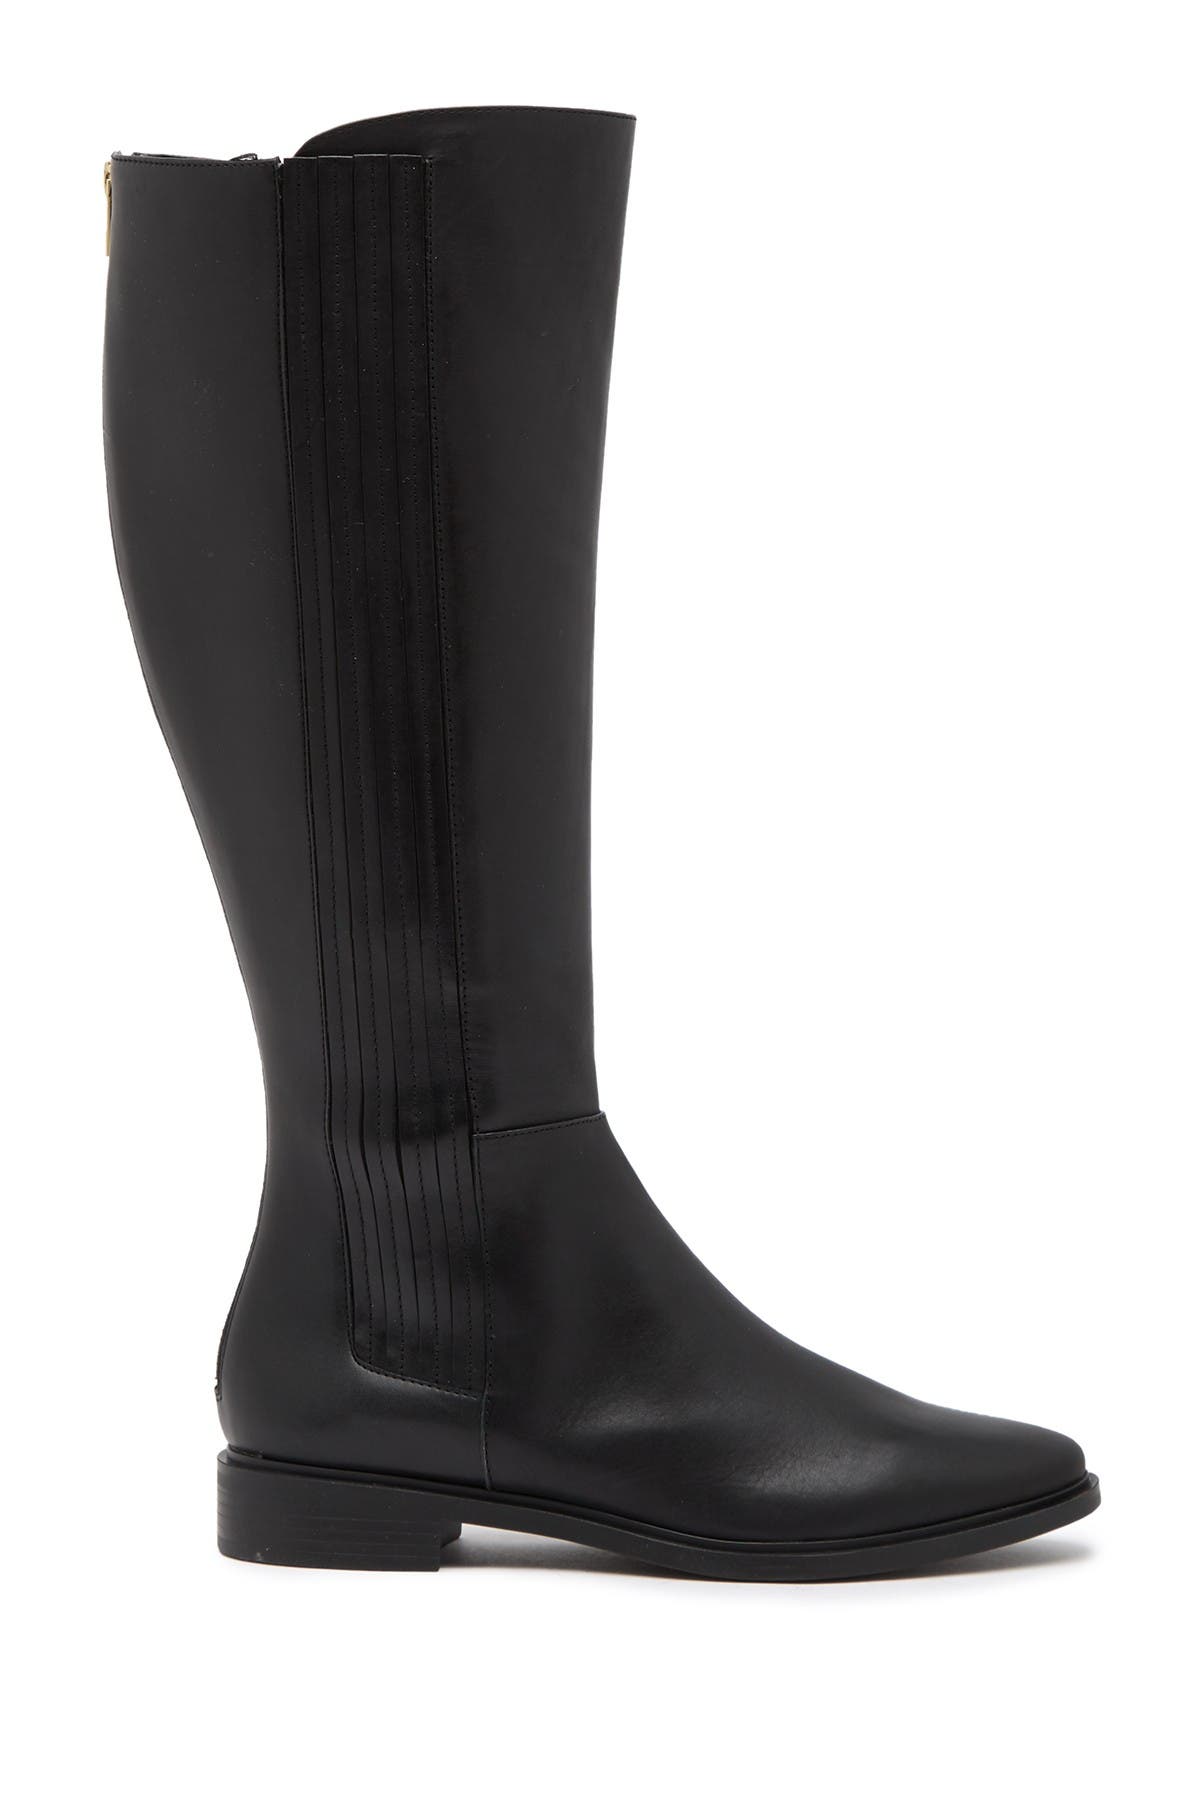 calvin klein finley wide calf boots